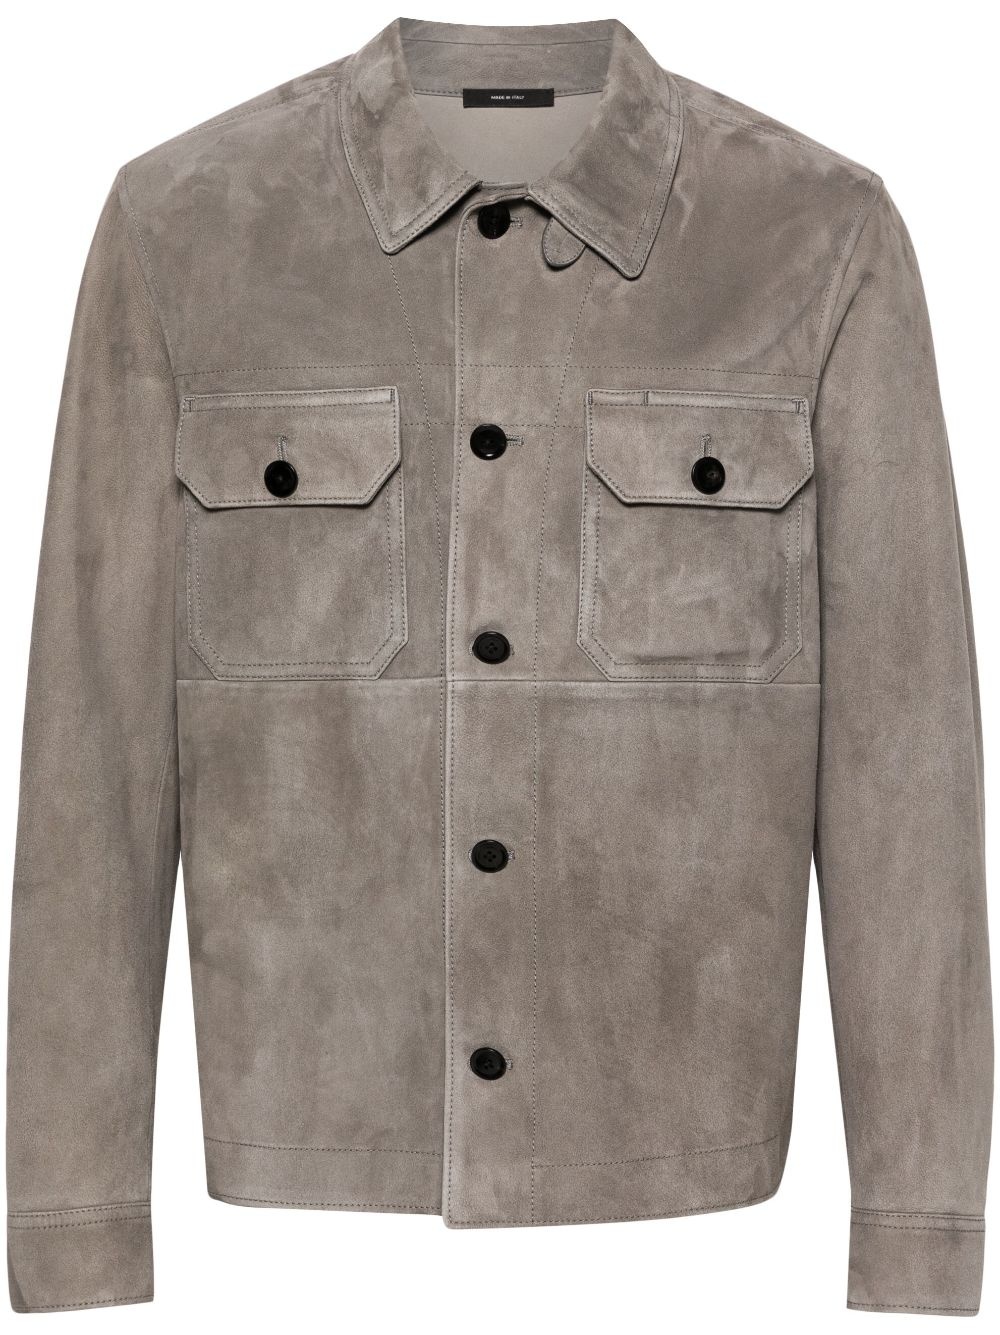 microsuede shirt jacket - 1